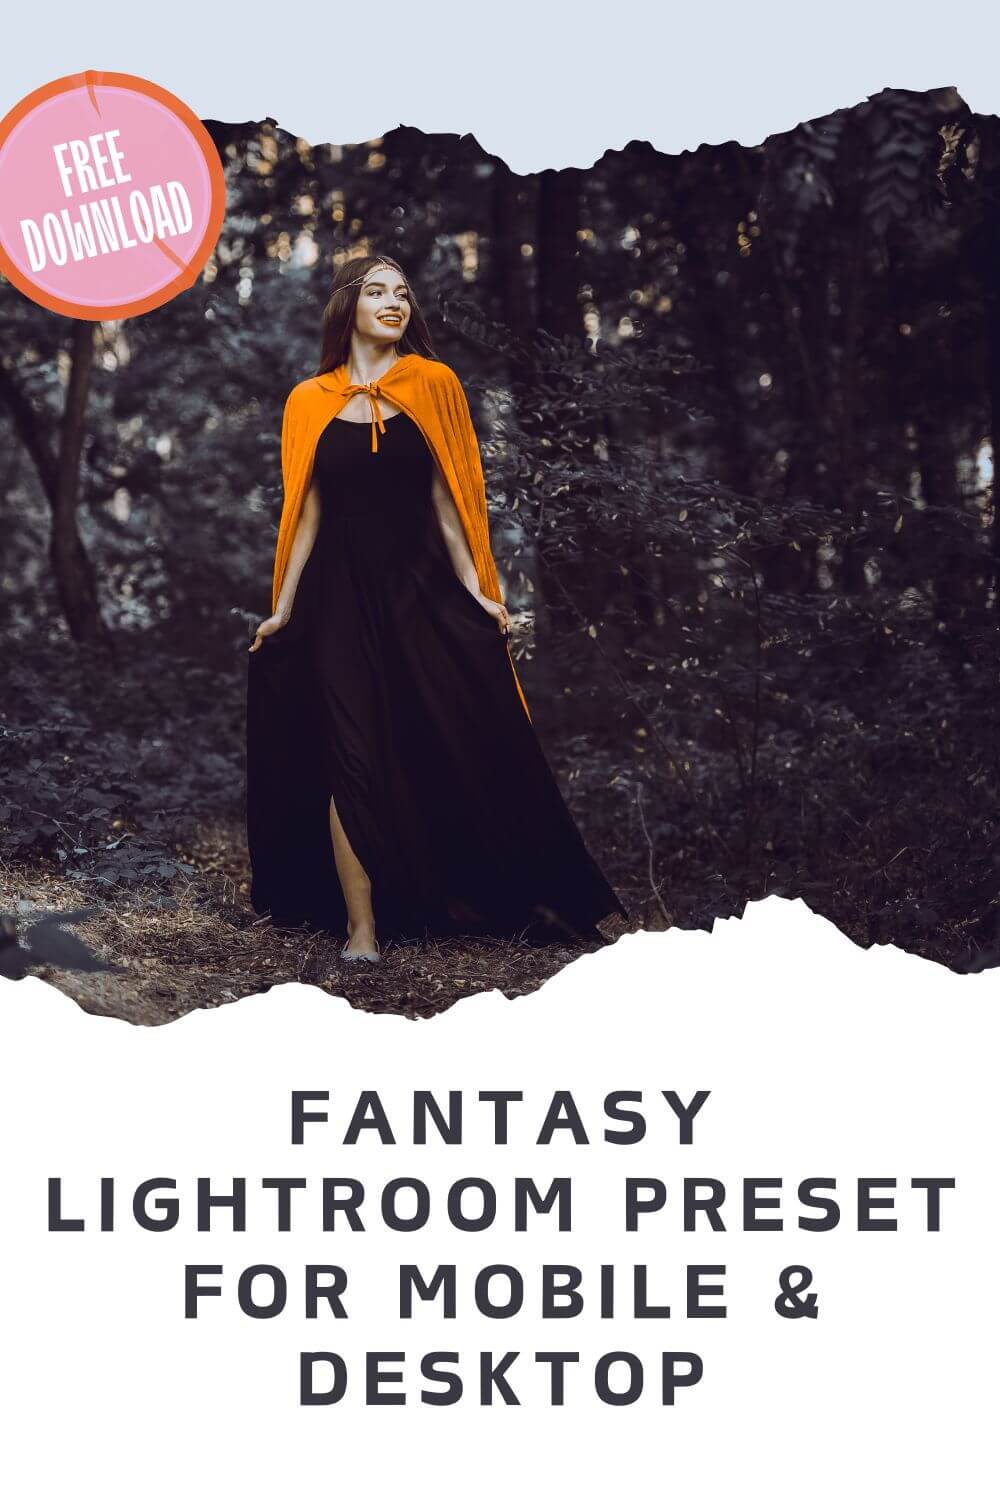 Fantasy Lightroom Preset For Mobile & Desktop Pinterest